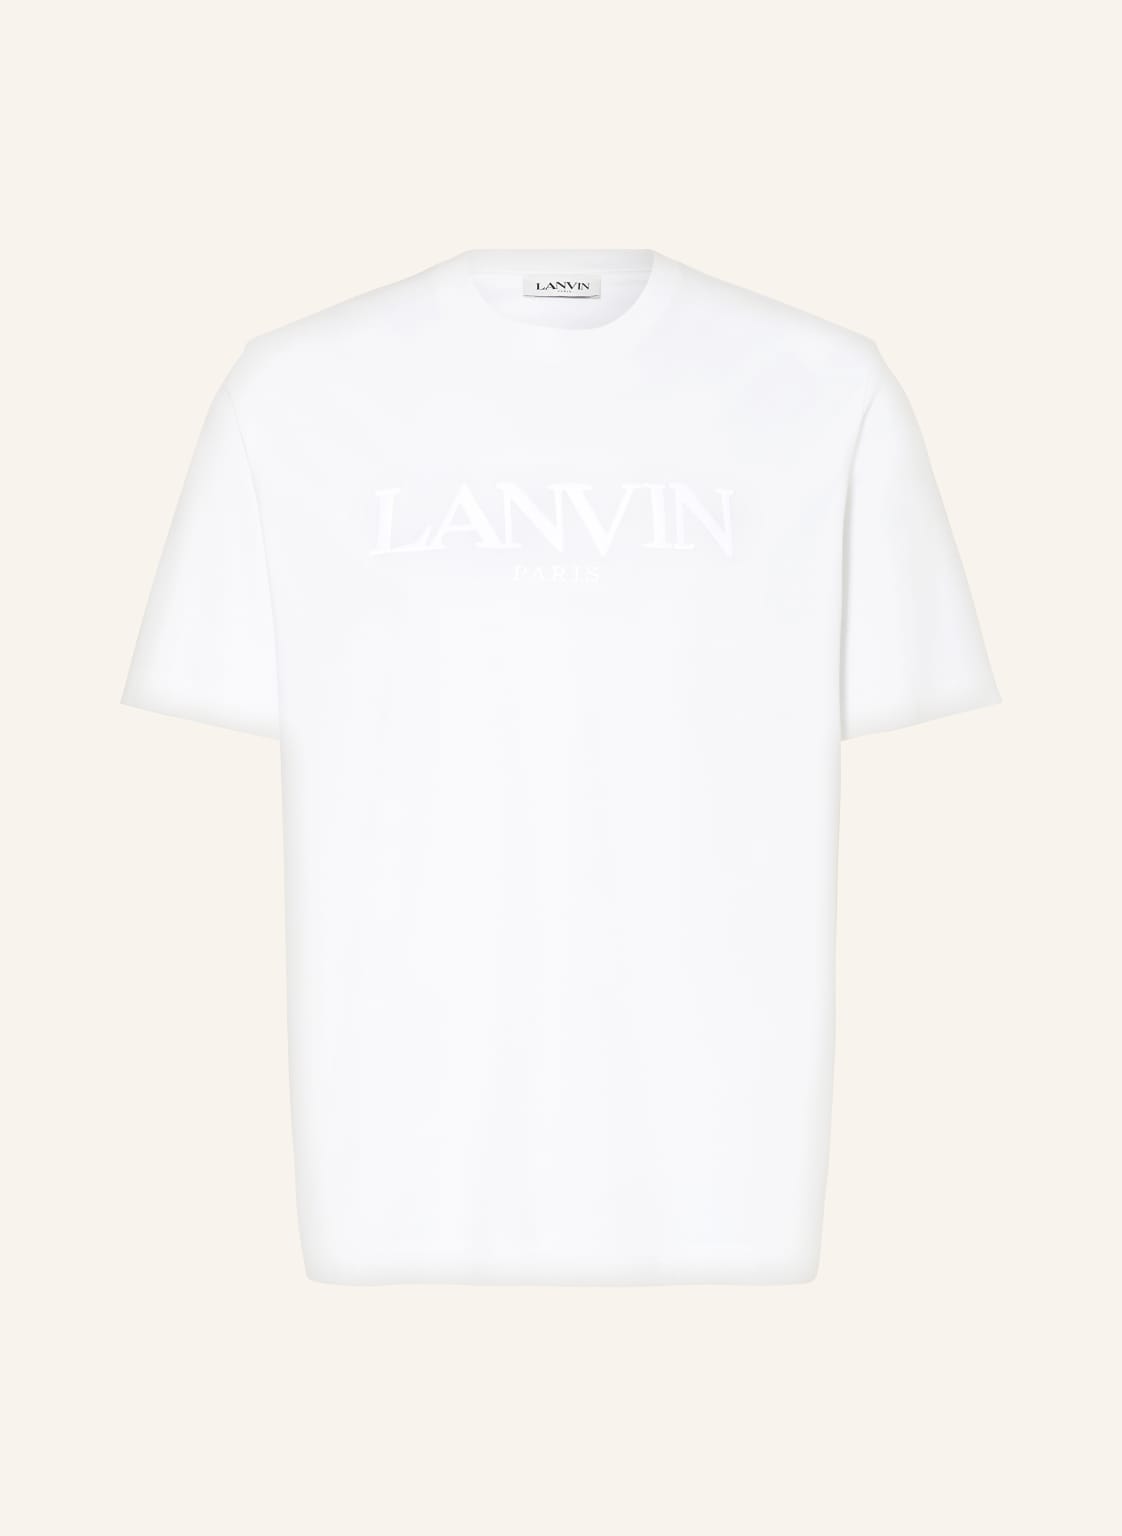 Lanvin T-Shirt weiss von LANVIN